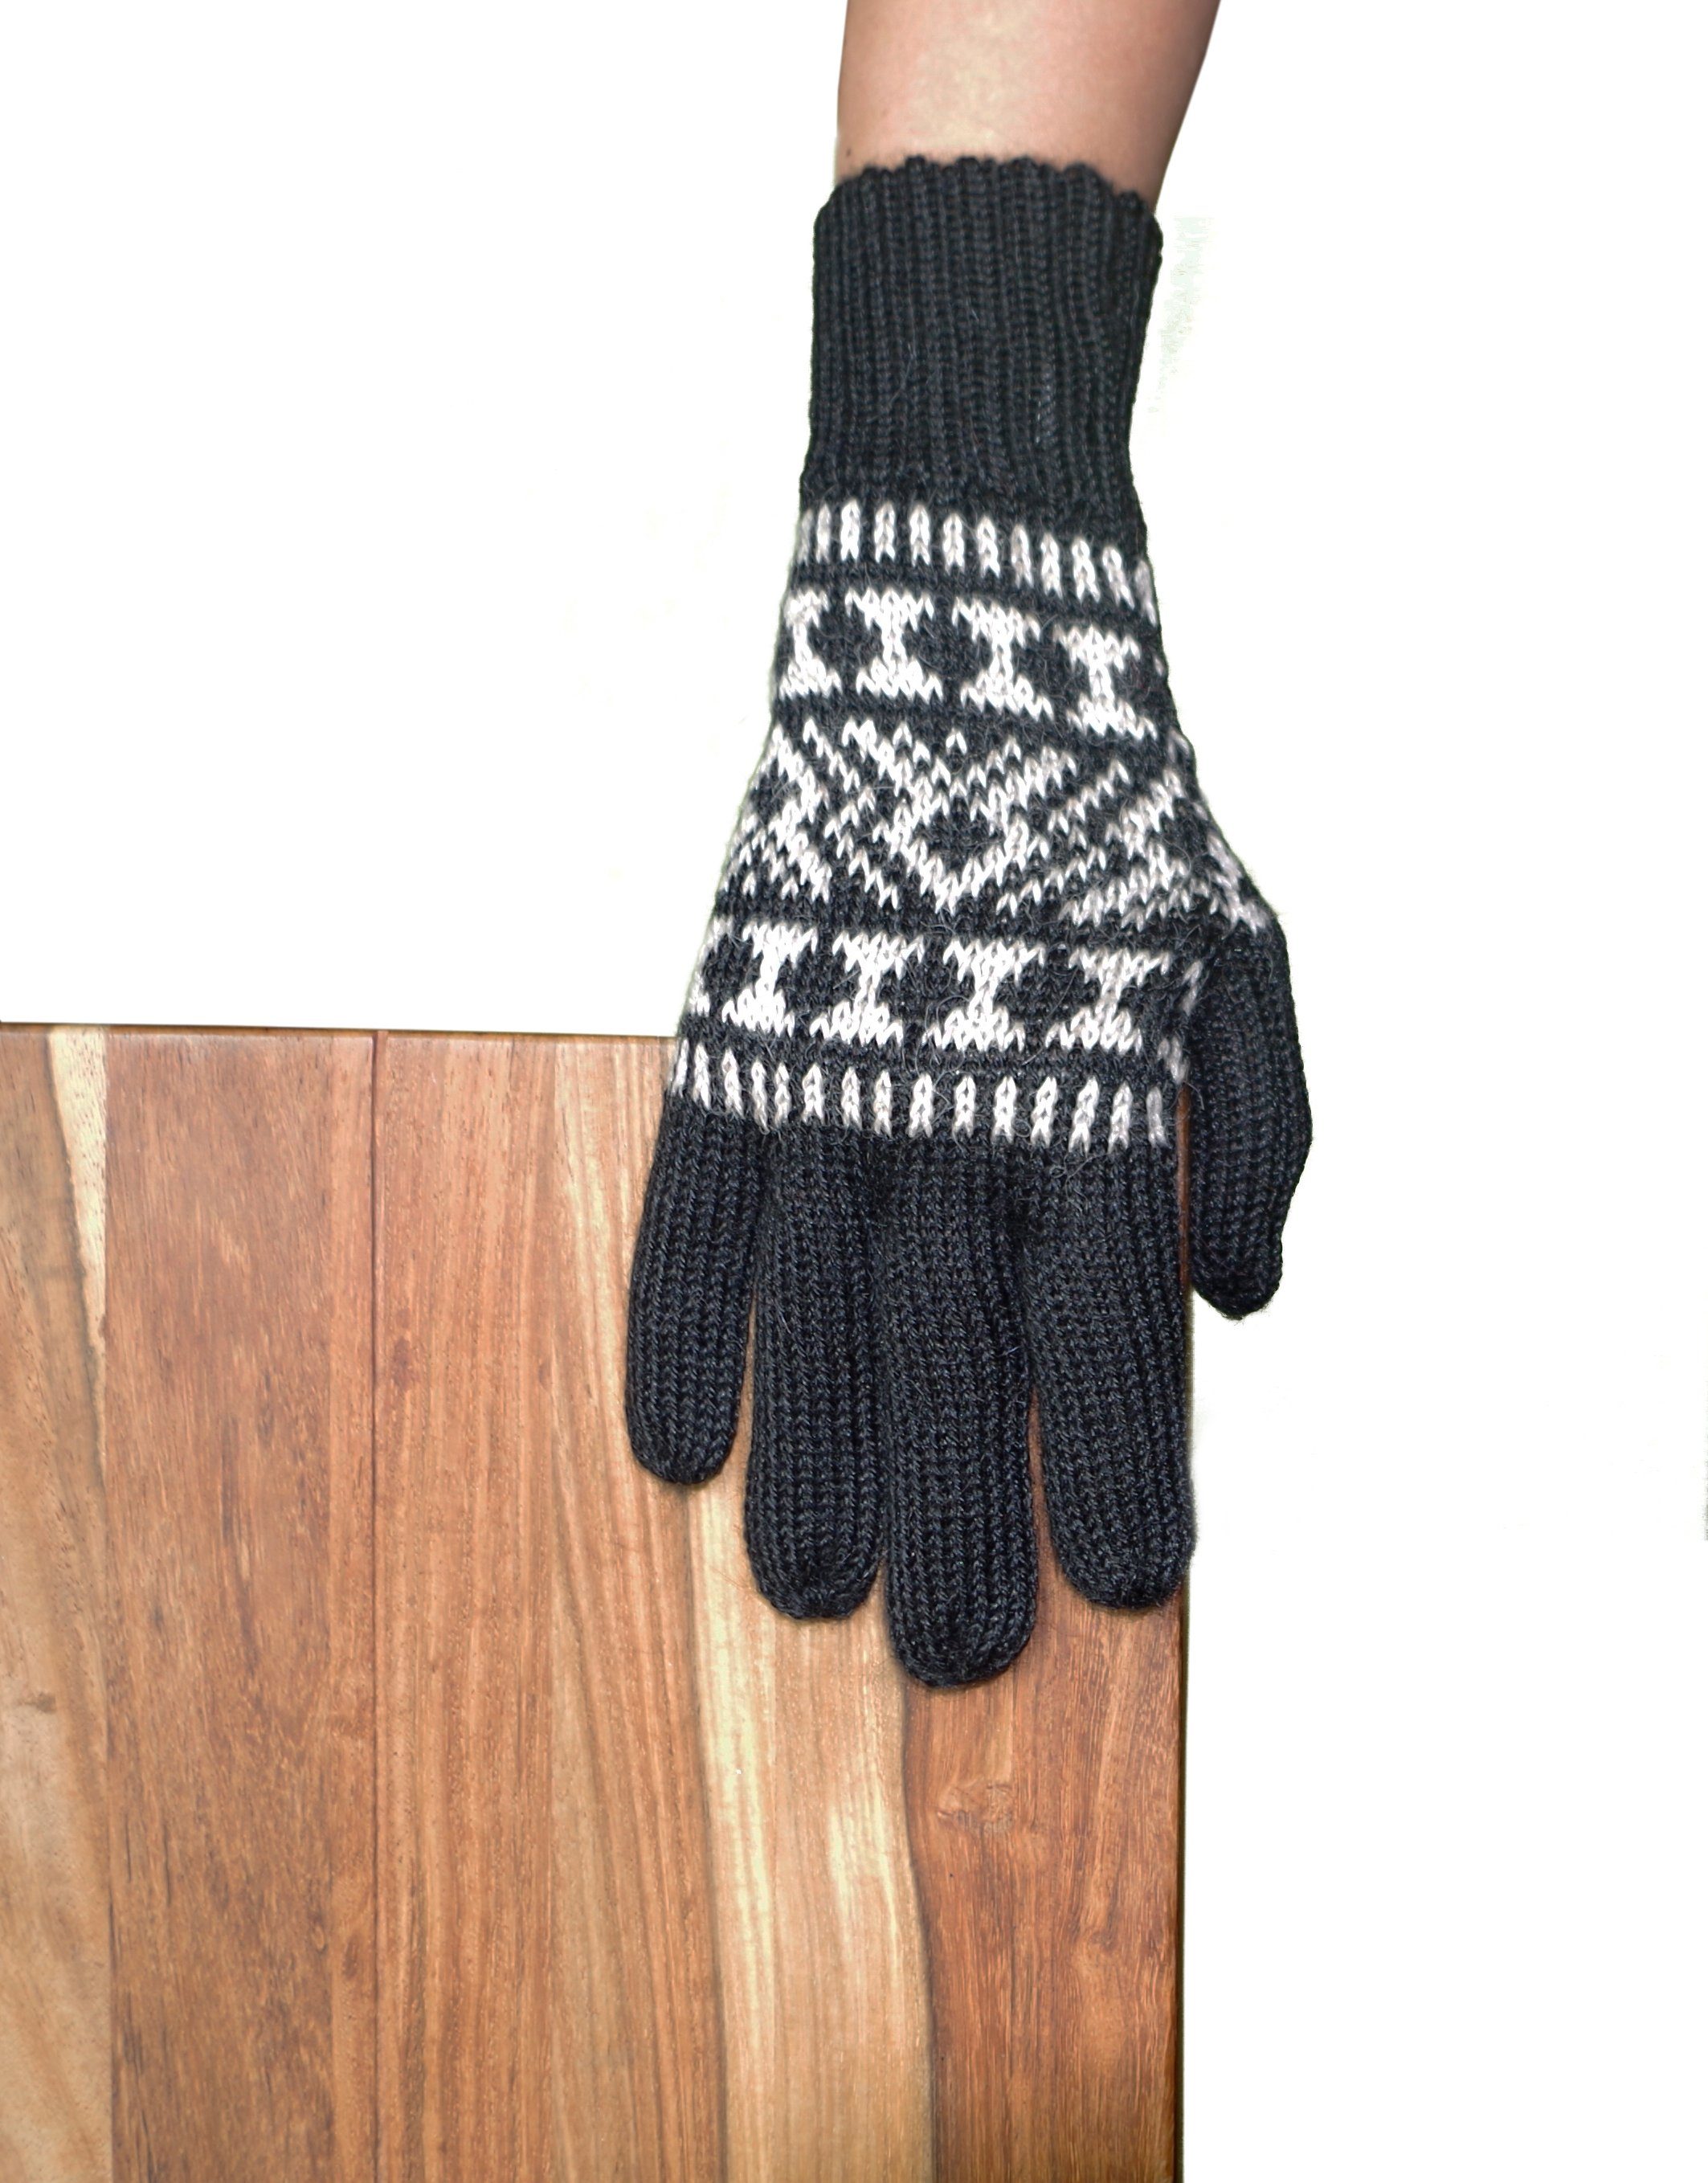 Posh Fingerhandschuhe Guantofigura aus Gear Strickhandschuhe Alpakawolle 100% schwarz